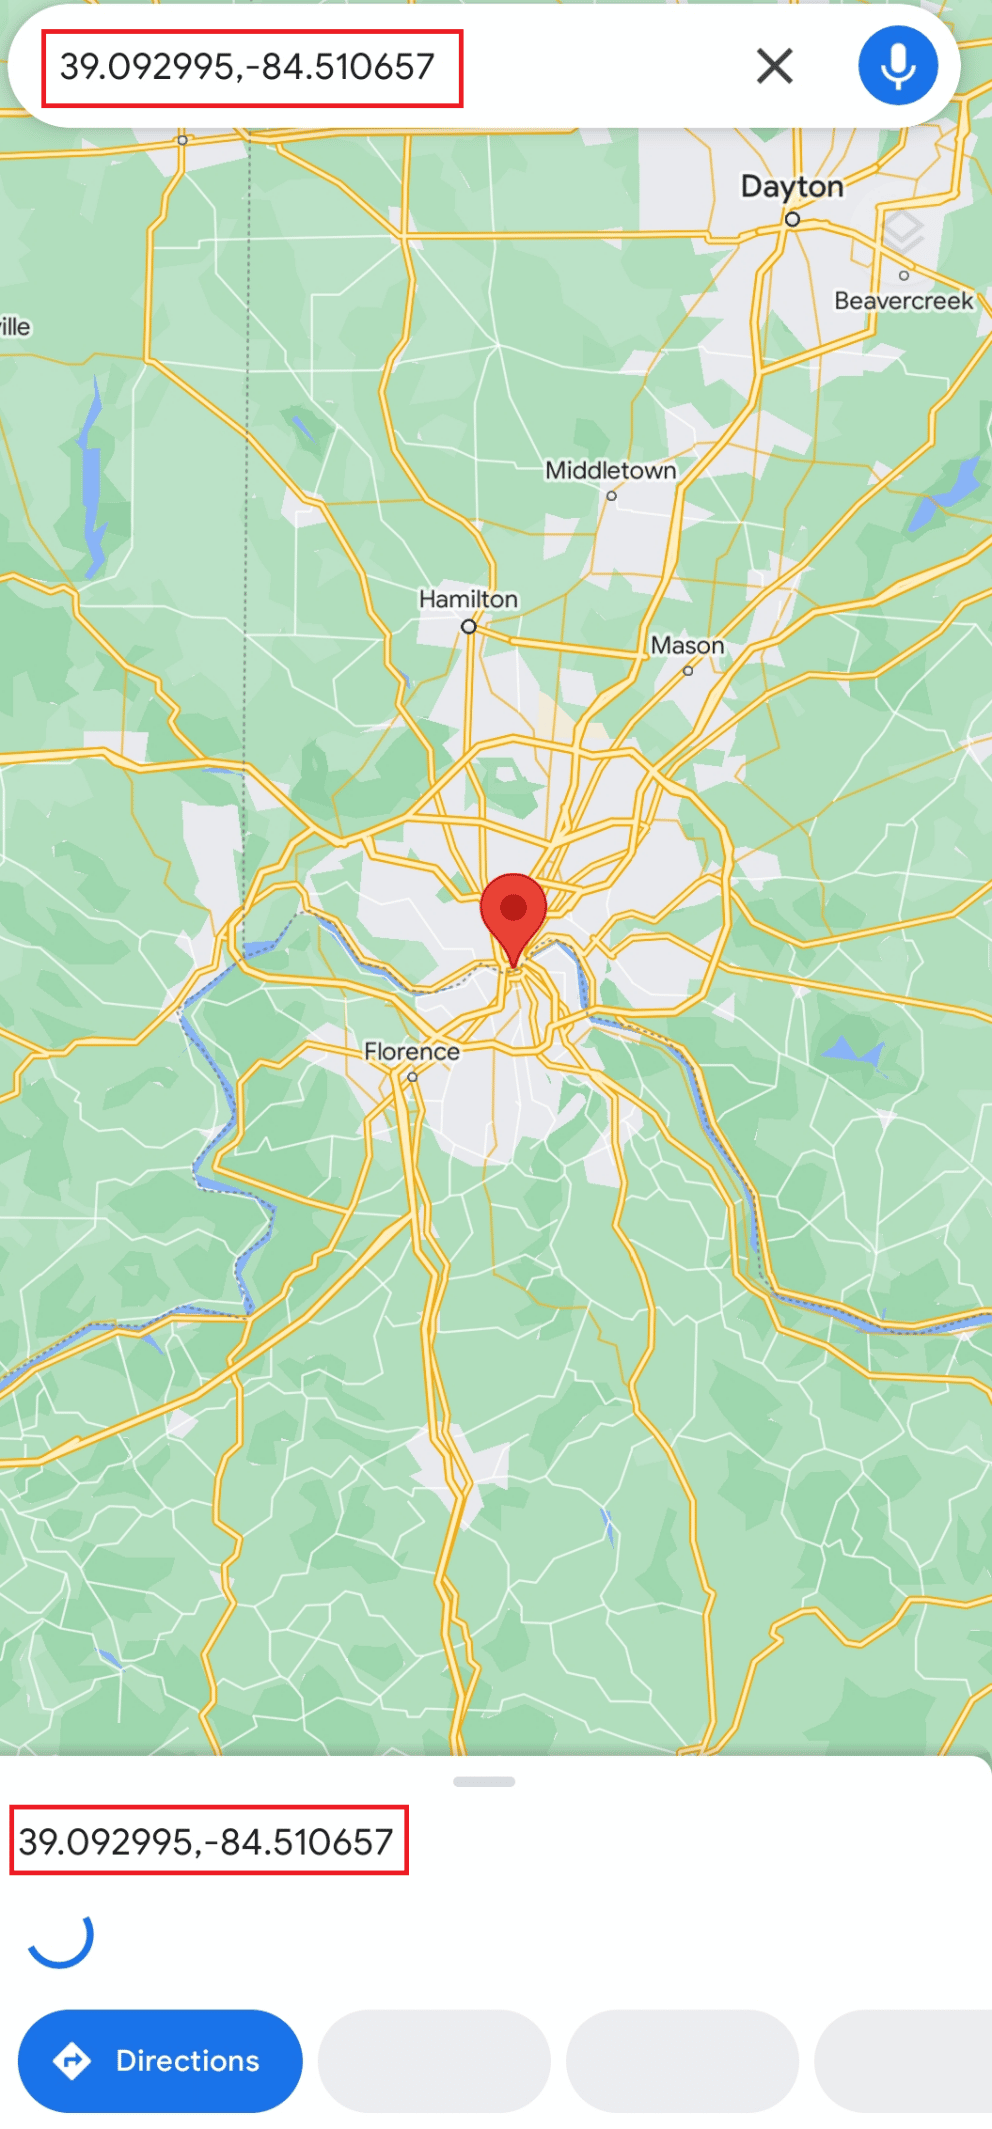 Trova Cincinnati e premi a lungo la posizione sullo schermo del tuo cellulare per ottenere le coordinate (39.09299,-84.51065) | a metà strada tra due posti